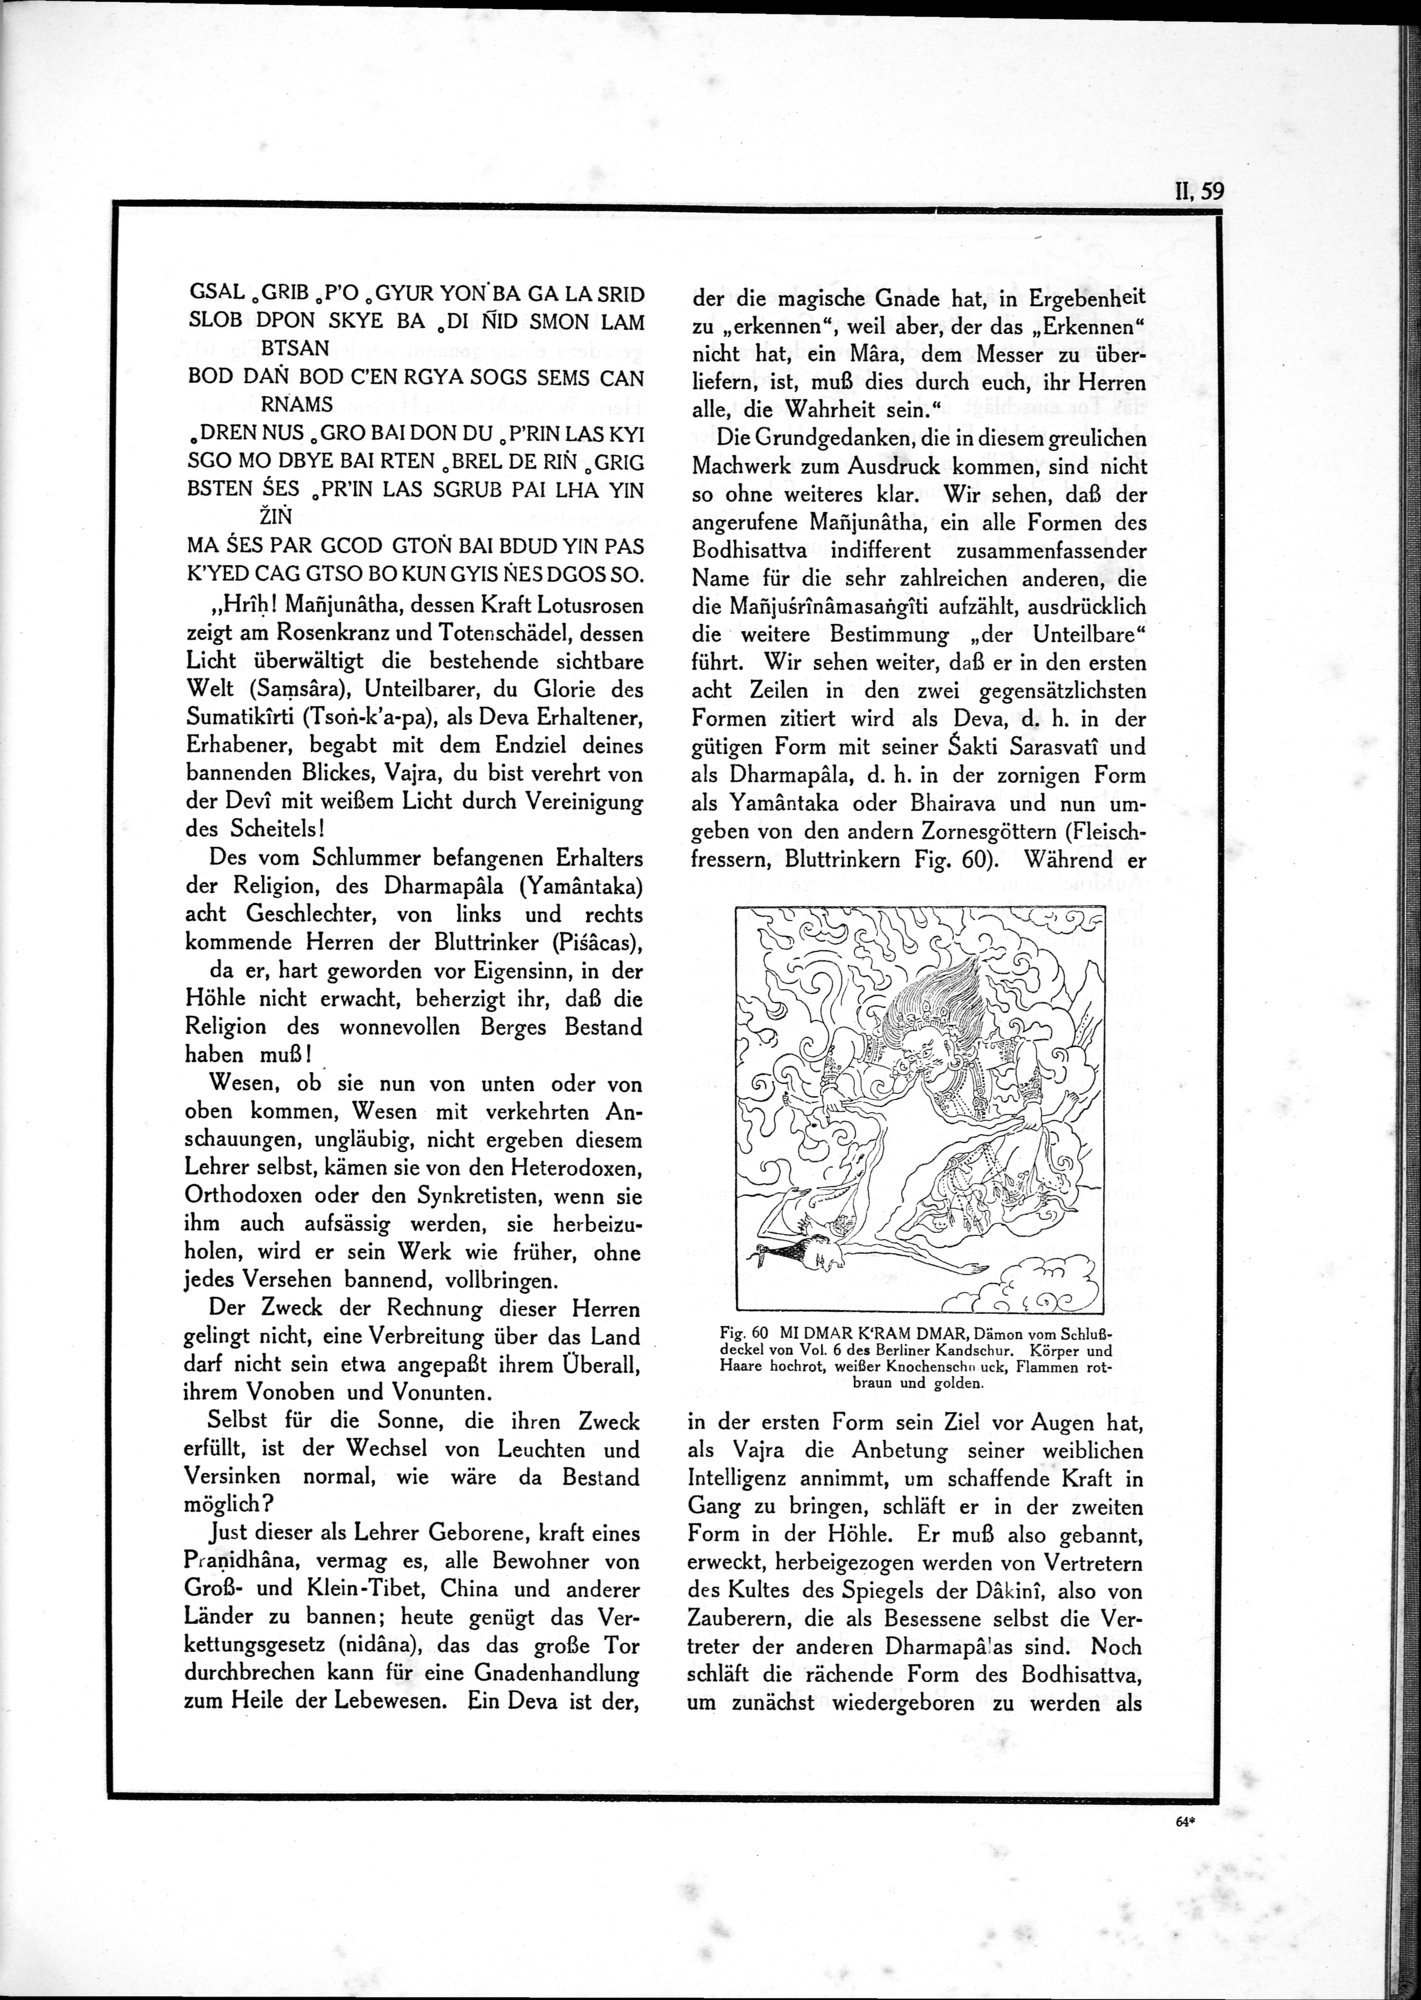 Die Teufel des Avesta und Ihre Beziehungen zur Ikonographie des Buddhismus Zentral-Asiens : vol.1 / Page 515 (Grayscale High Resolution Image)